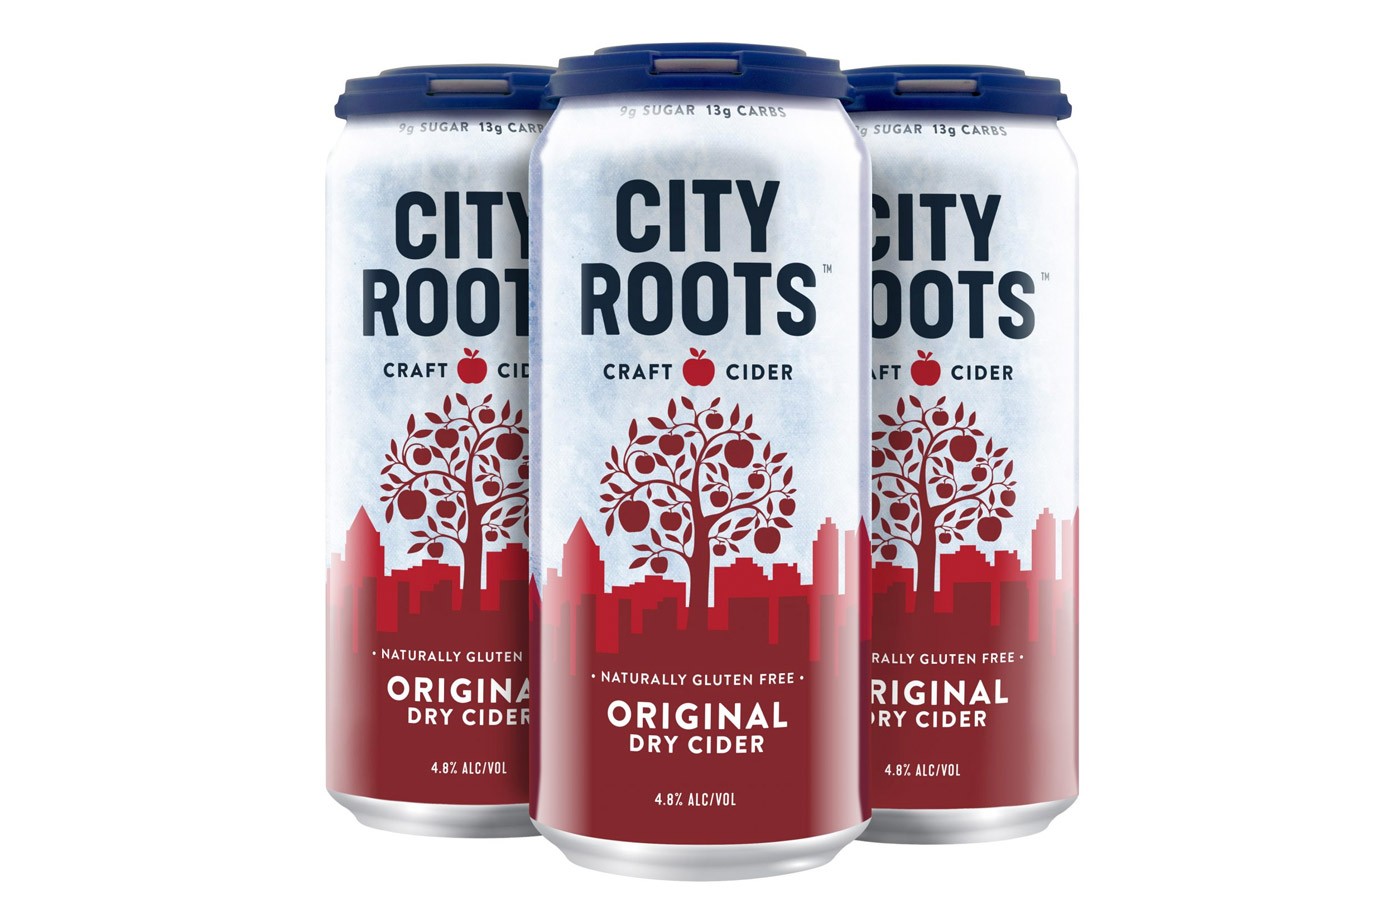 City Roots Cider: Mission-Led Craft Cider